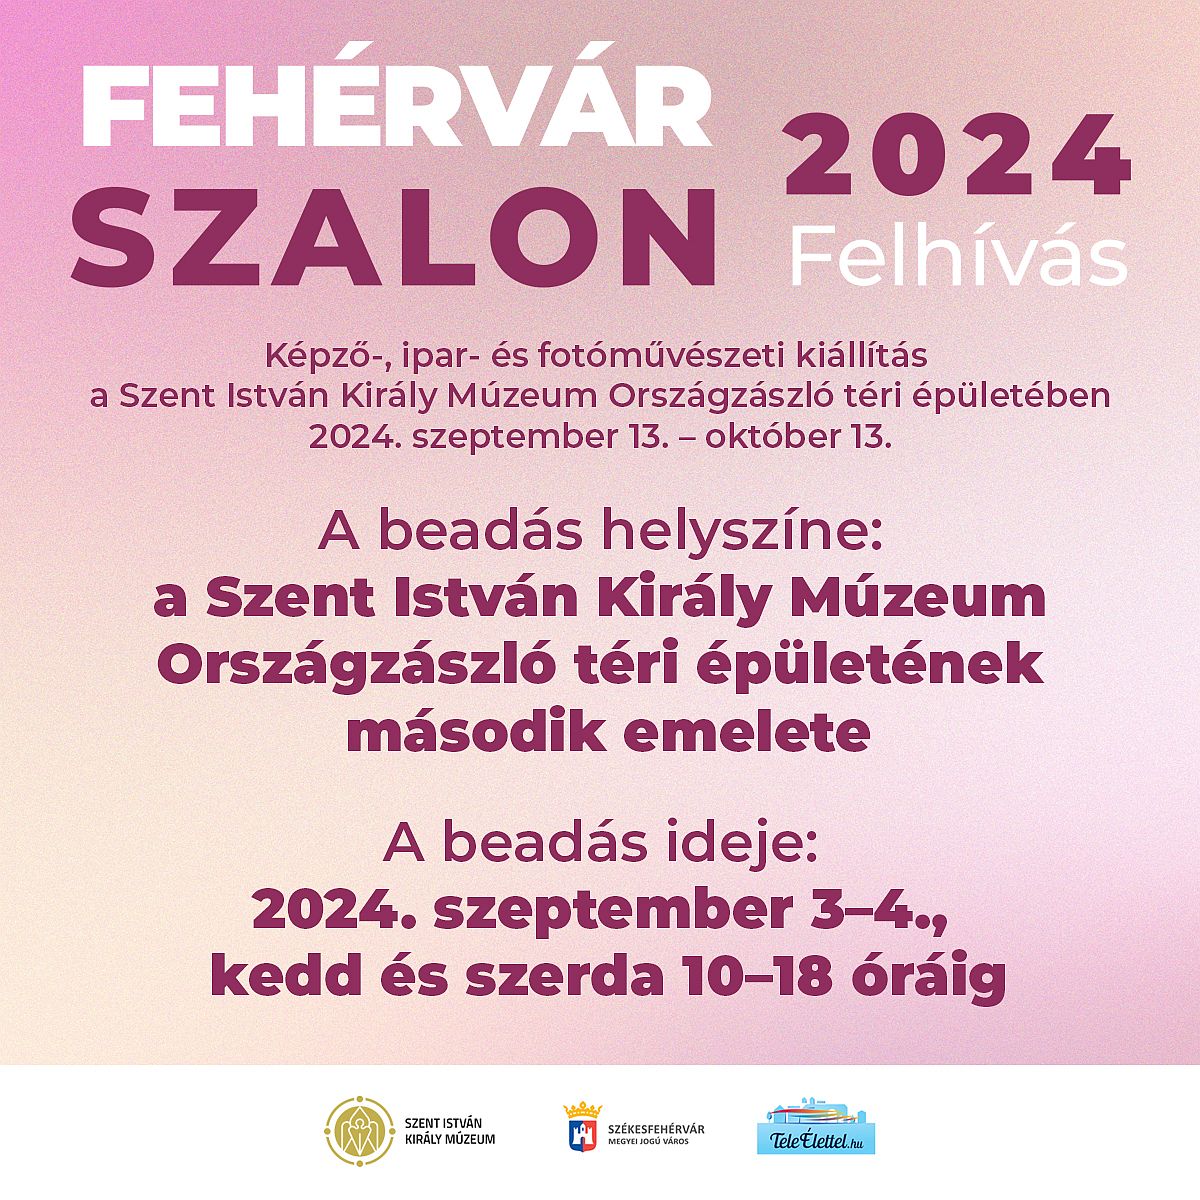 Fehérvár Szalon 2024. - képző-, ipar- és fotóművészeti kiállításra várják a pályázókat